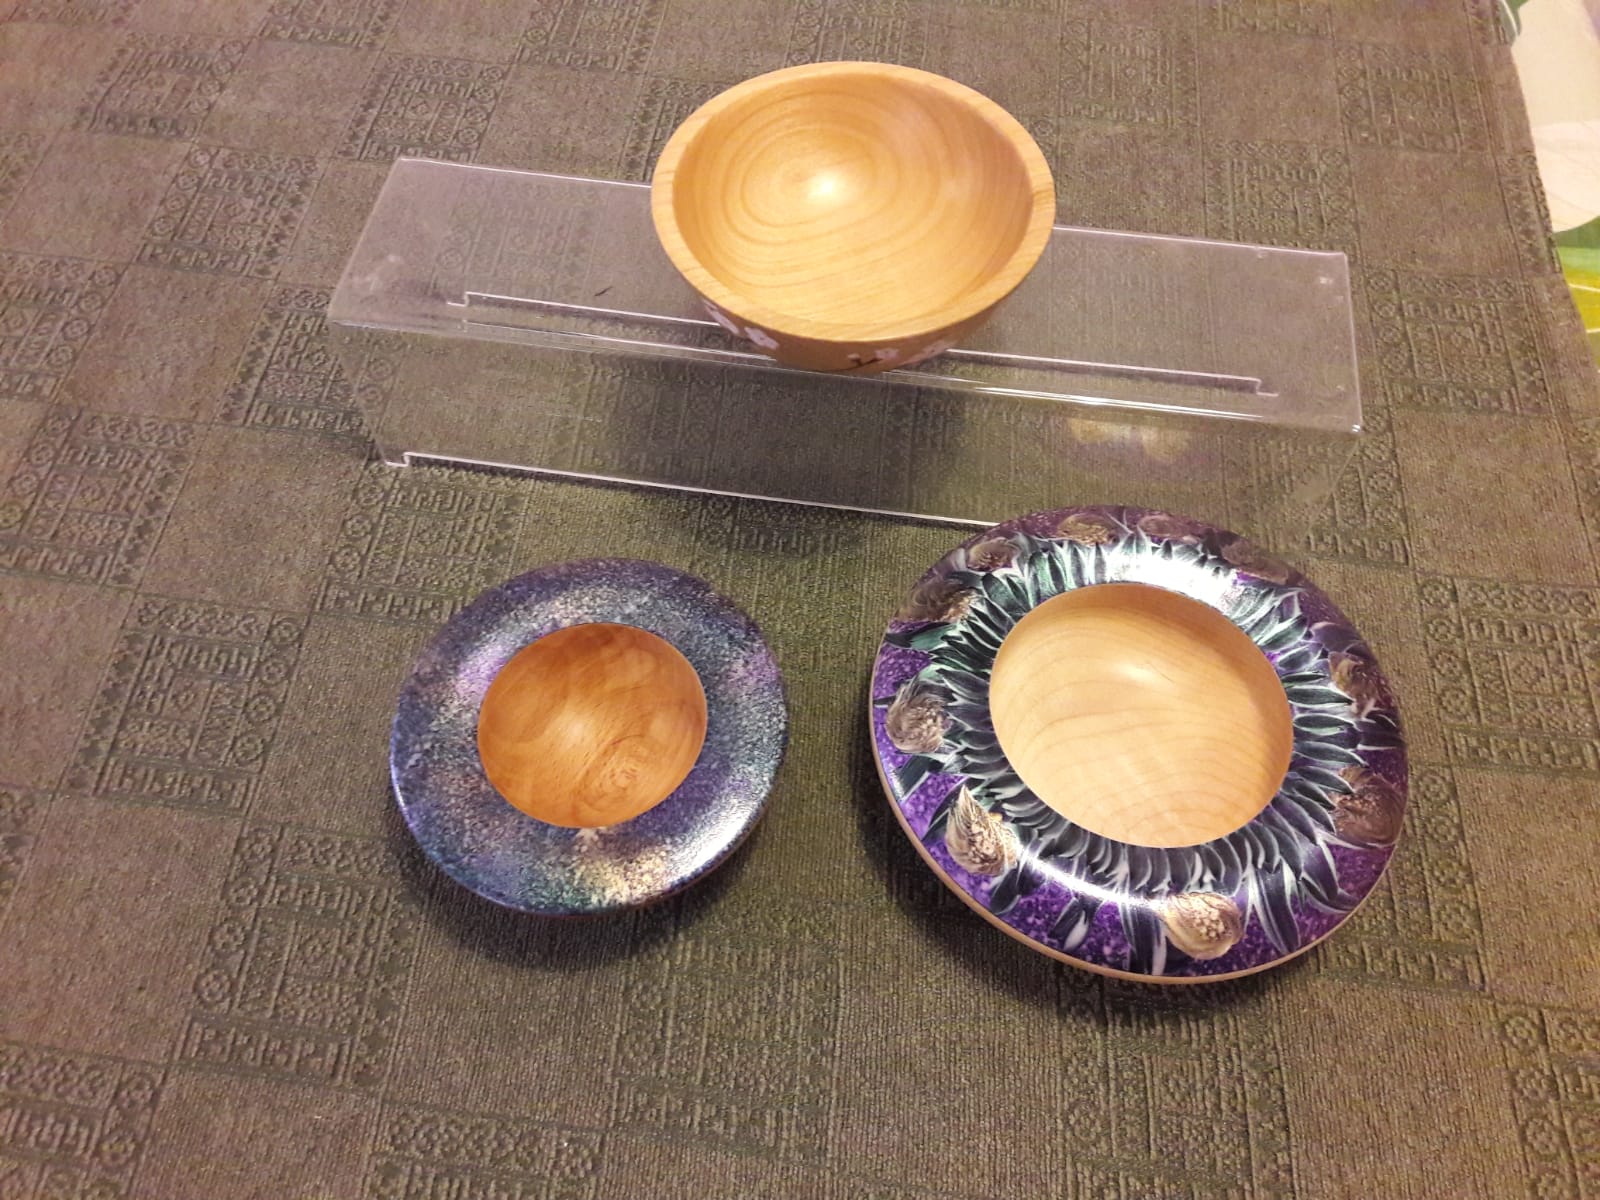 Textured bowls by Joanne Gordon